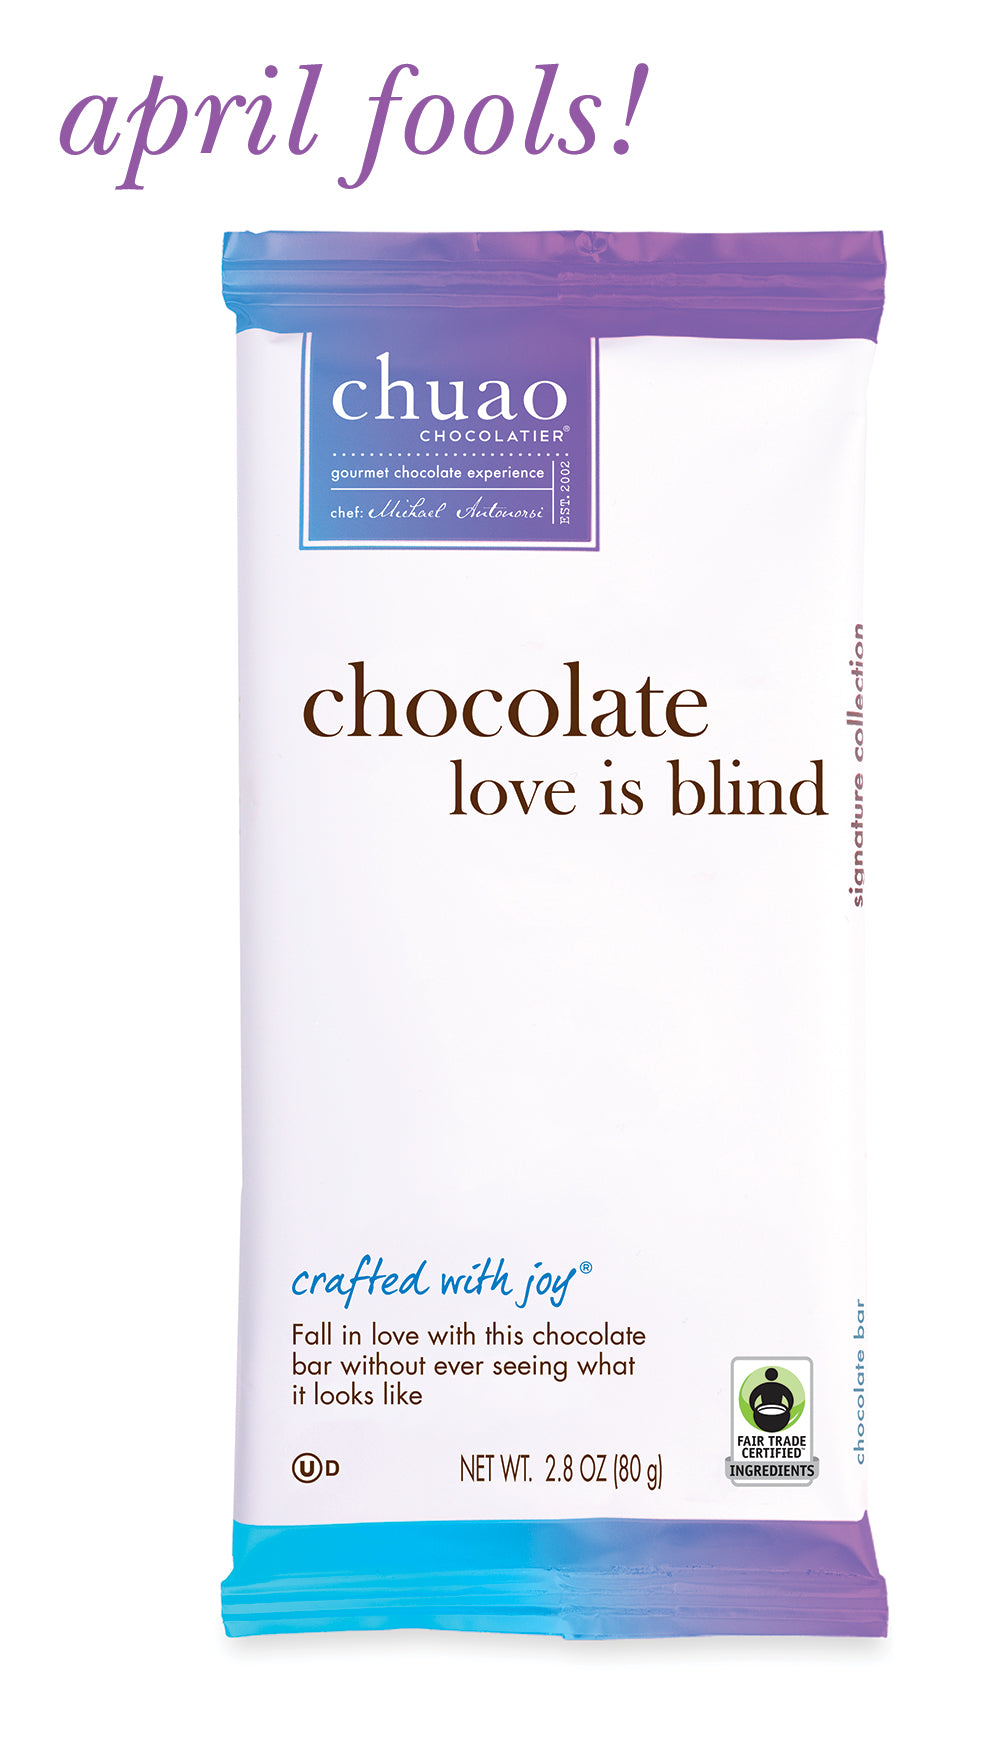 巧克力的爱情是盲目的——四月傻瓜!